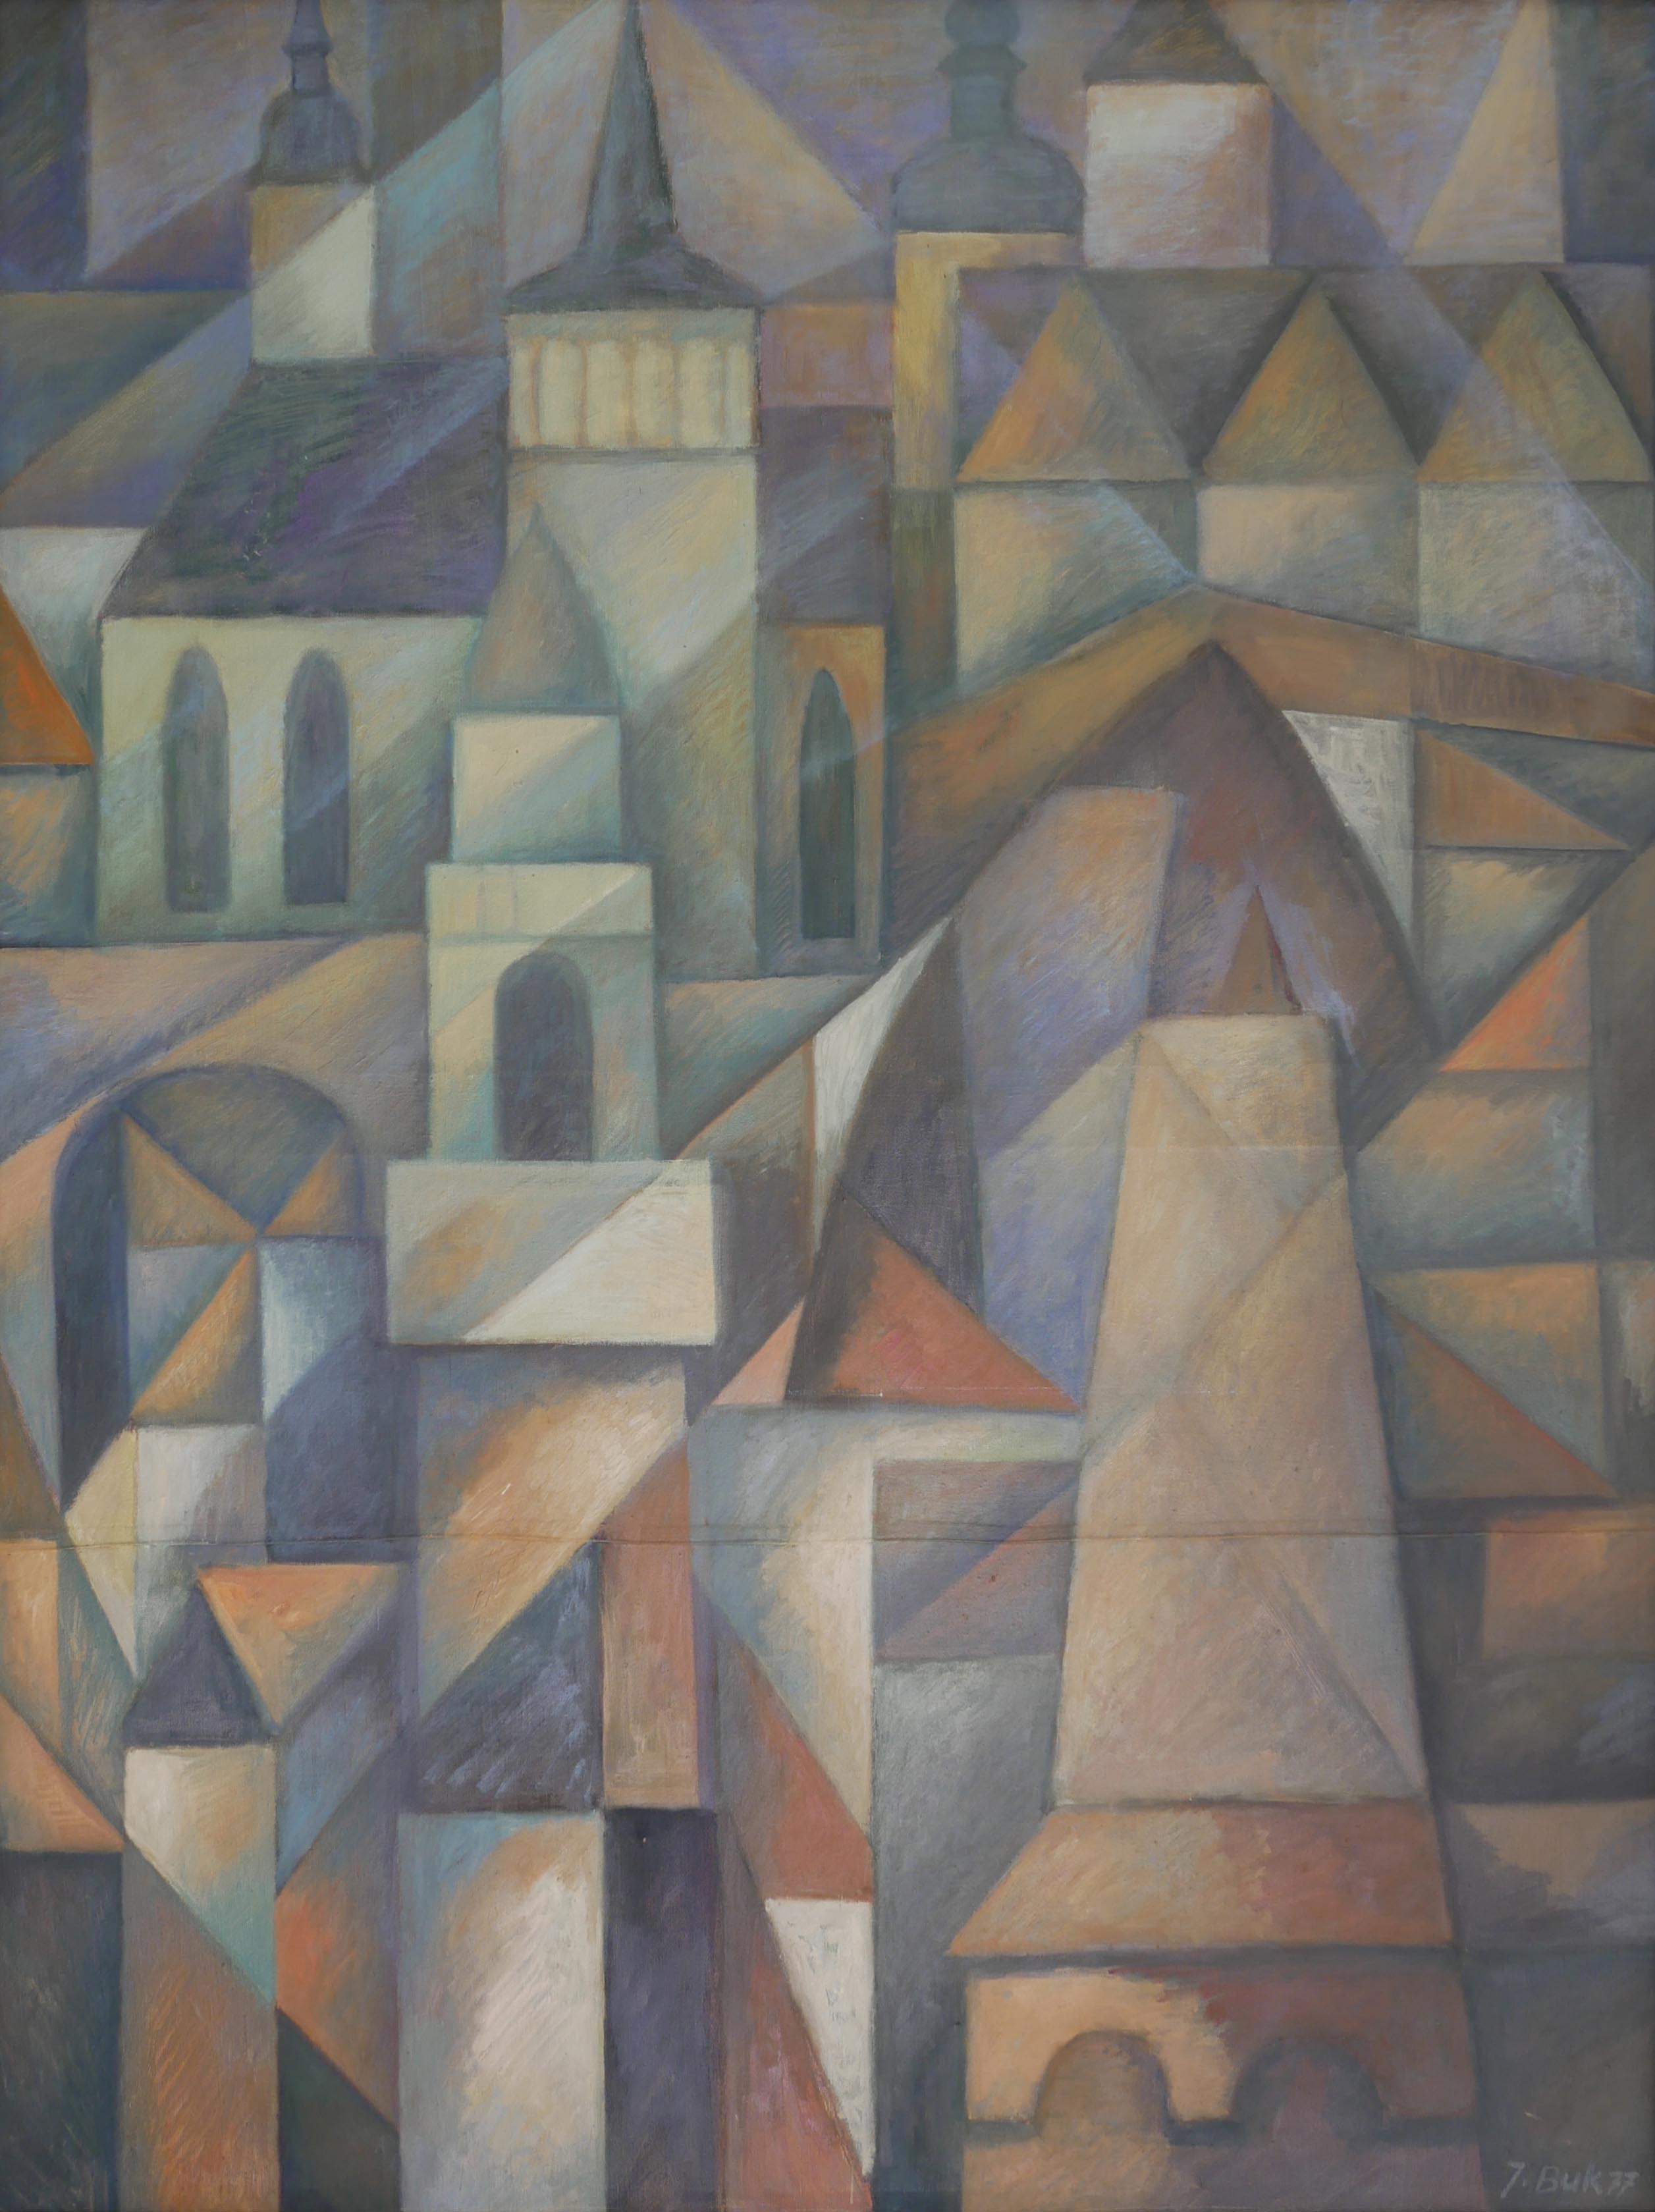 Kubistisch anmutendes Gemälde einer Vielzahl von geometrisch angeordneten und mit klaren Konturen gemalten Bauwerken